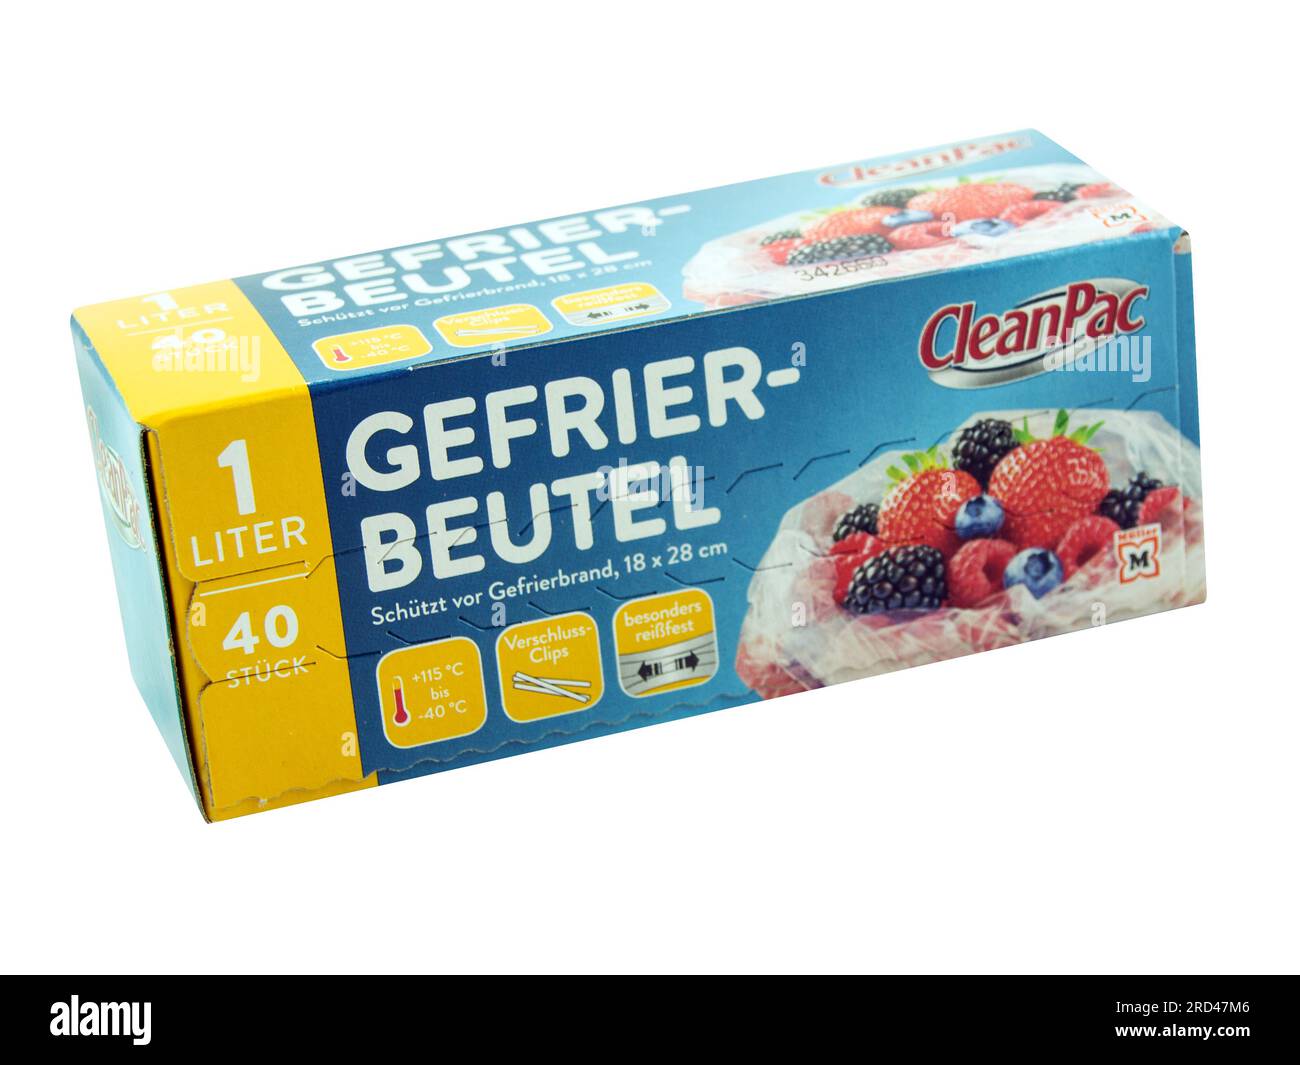 Hamburg, Germany - July 18  2023: Müller Clean Pac, Gefriebeutel 1,  Liter im Pappkarton  auf weißem Hintergrund Stock Photo